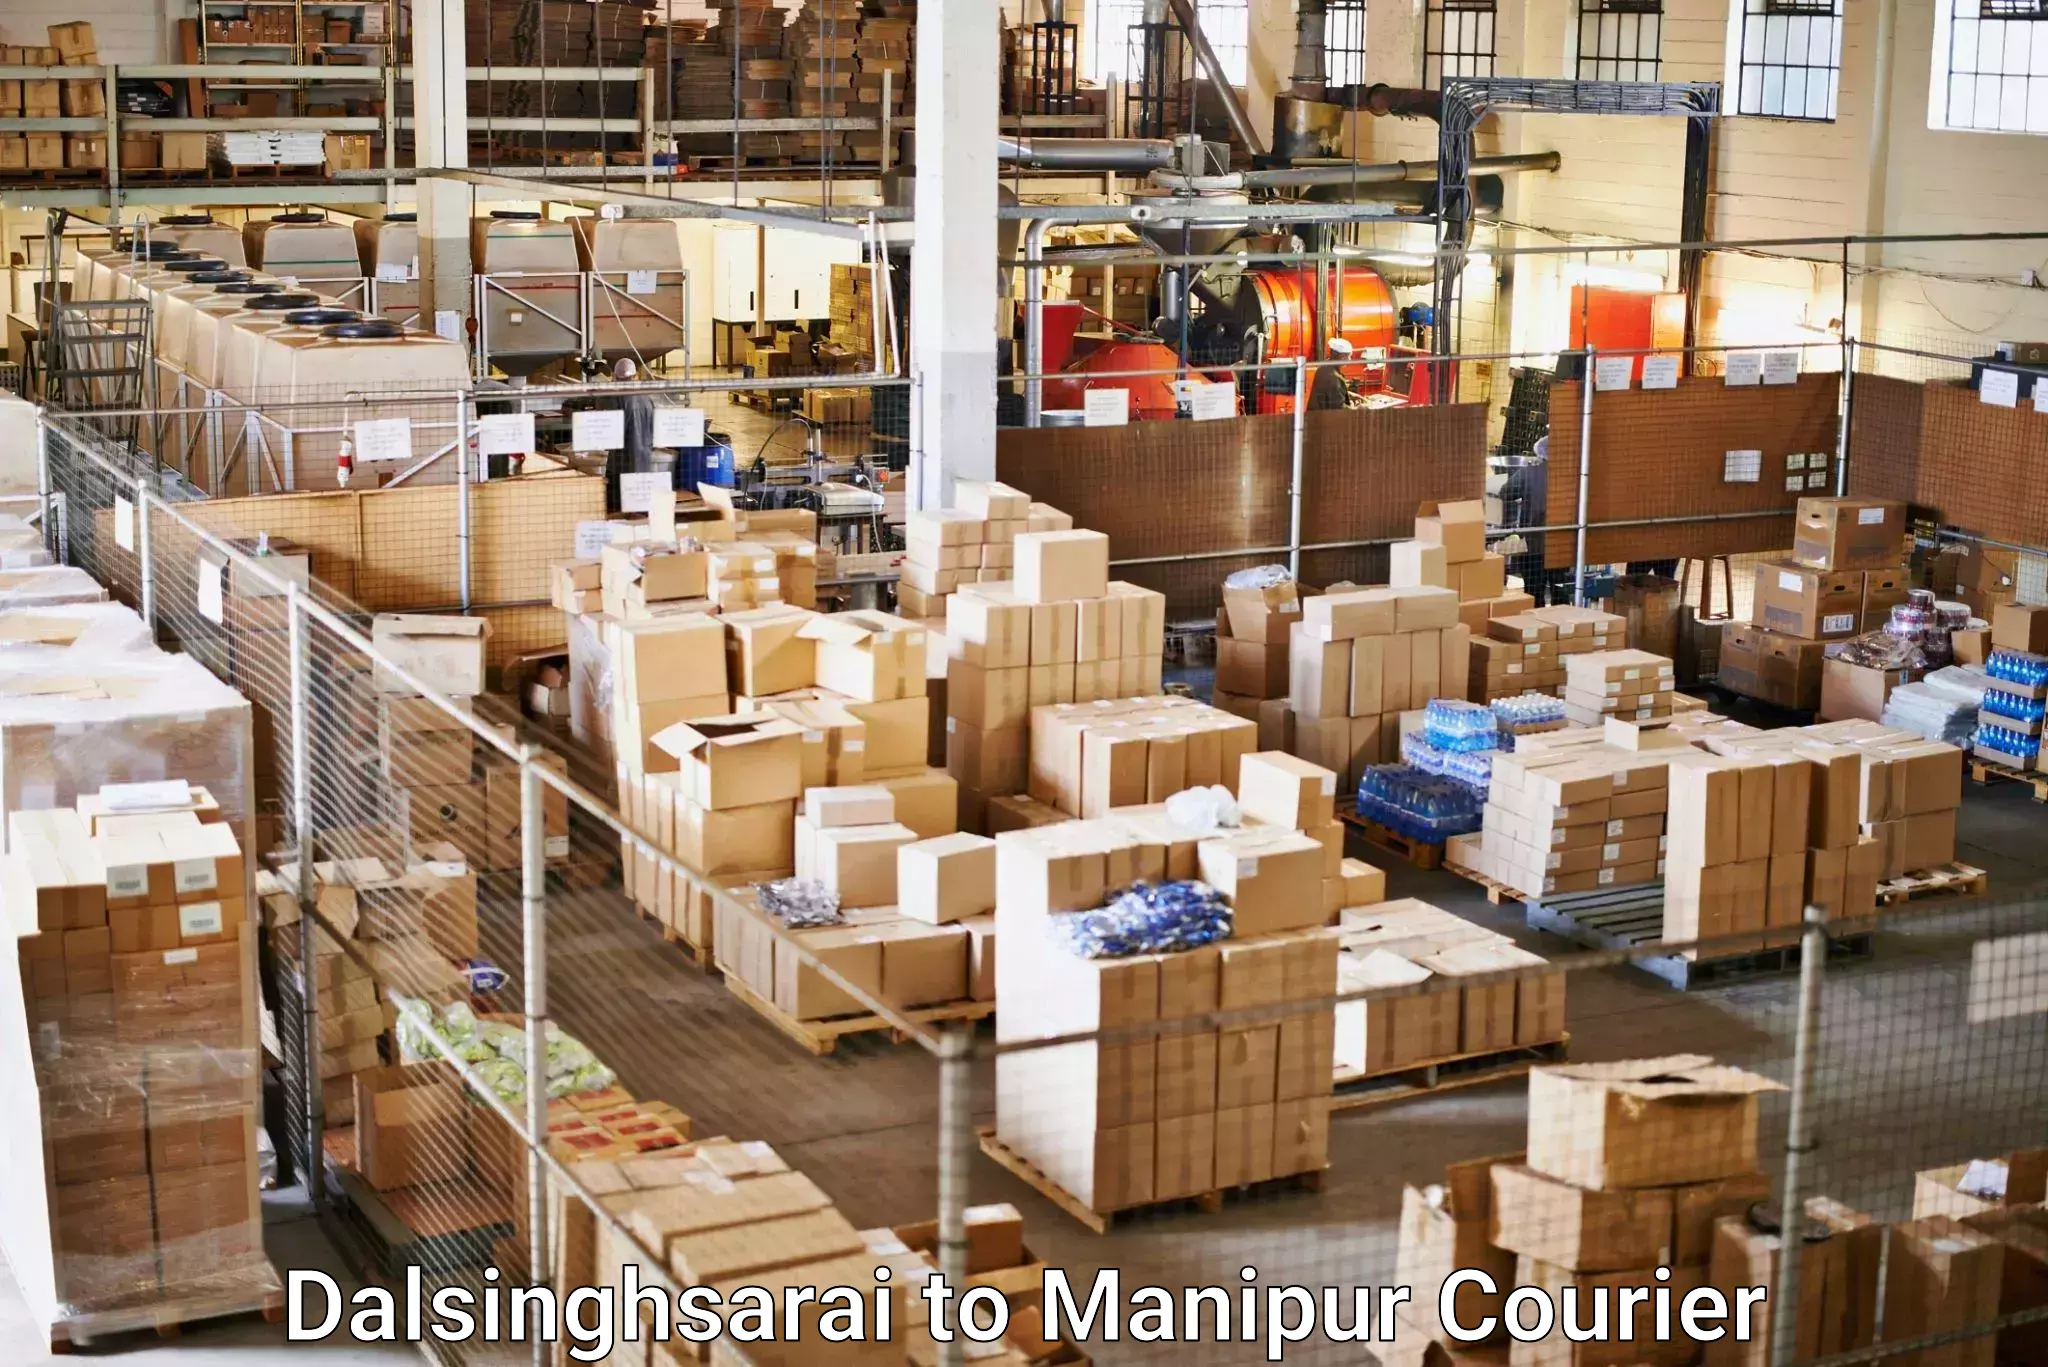 Smart logistics strategies Dalsinghsarai to Senapati